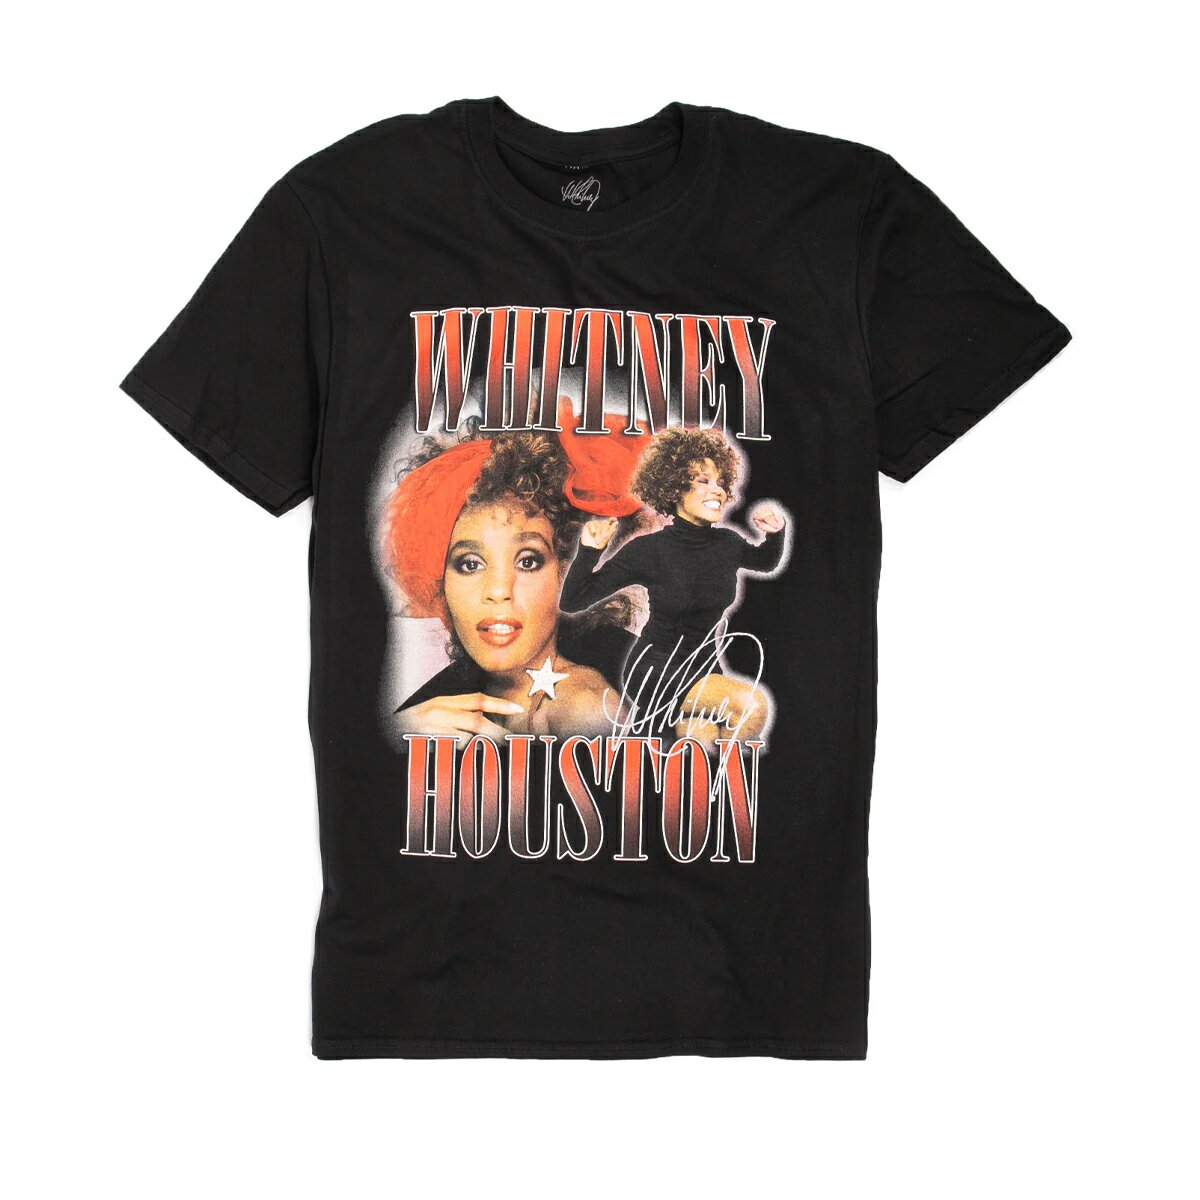 (ホイットニー・ヒューストン) Whitney Houston オフィシャル商品 ユニセックス 90s Homage Tシャツ コットン 半袖 トップス 【海外通販】